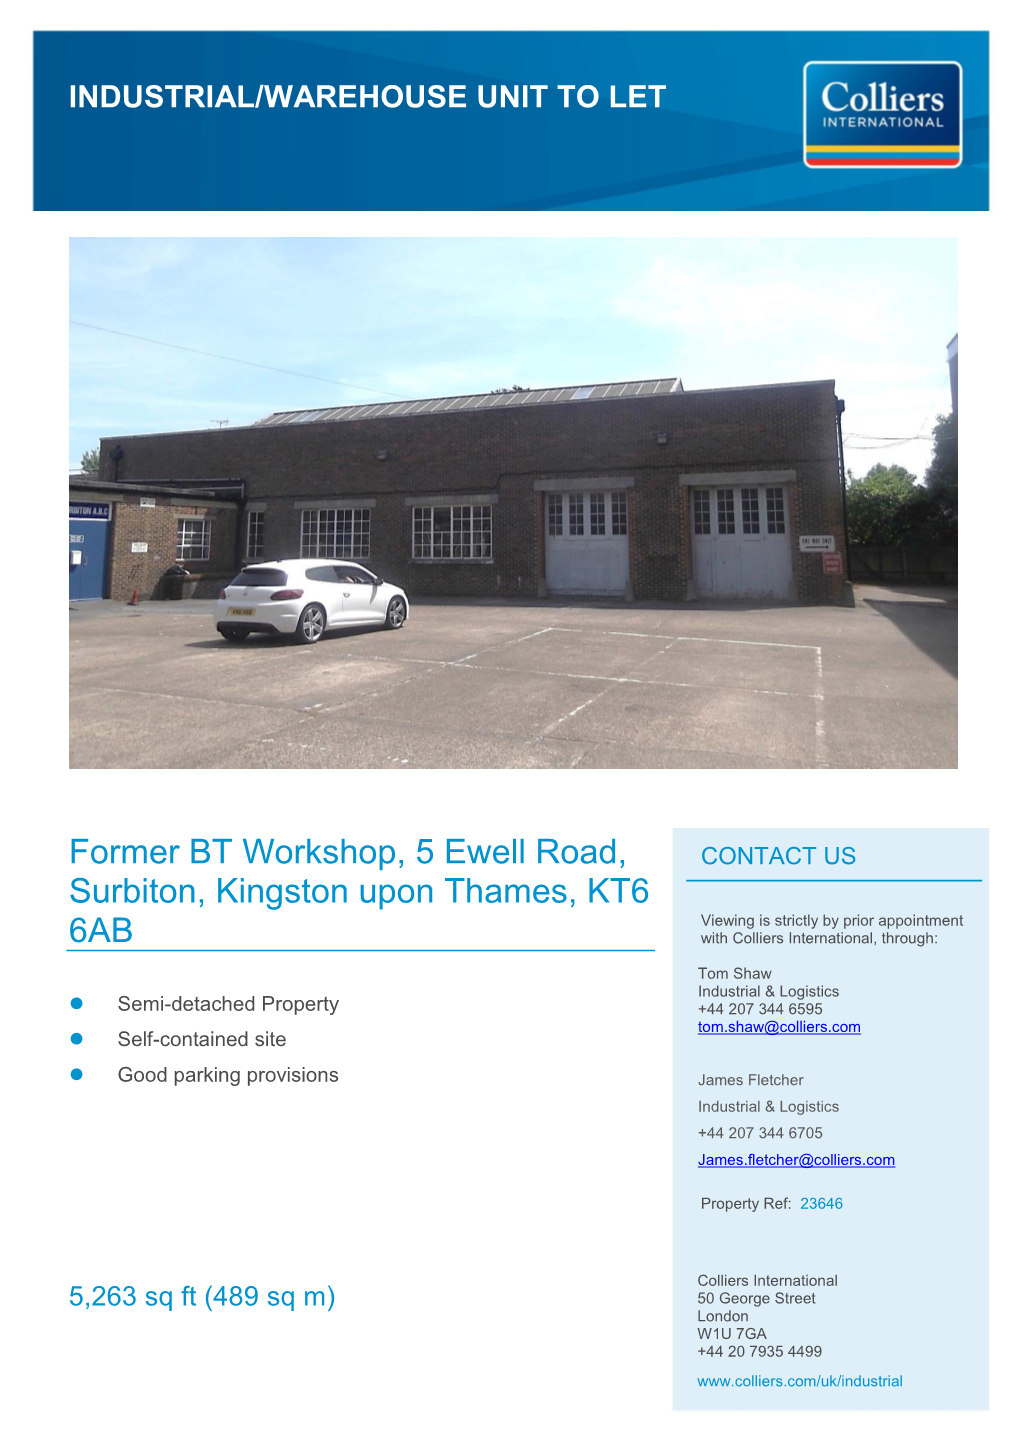 Former BT Workshop, 5 Ewell Road, Surbiton, Kingston Upon Thames, KT6 6AB